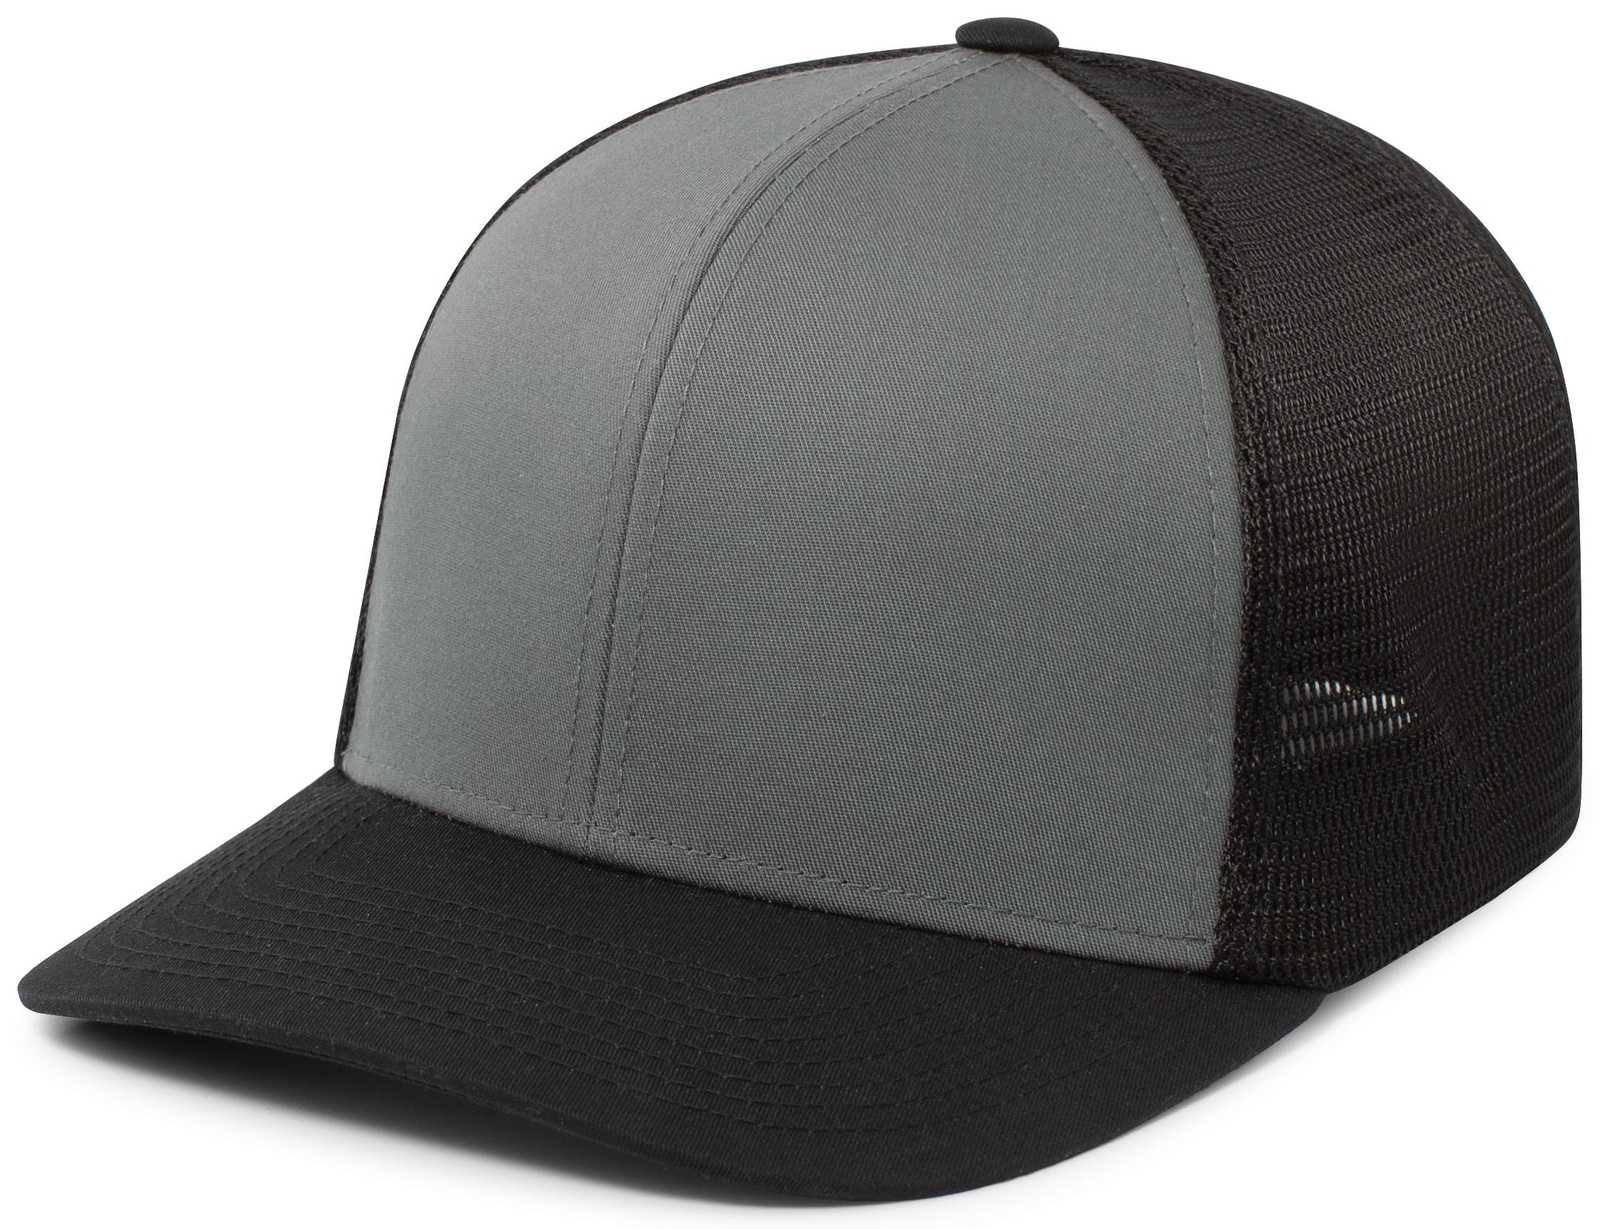 Pacific Headwear P401 Fusion Trucker Cap - Graphite Black Black - HIT a Double